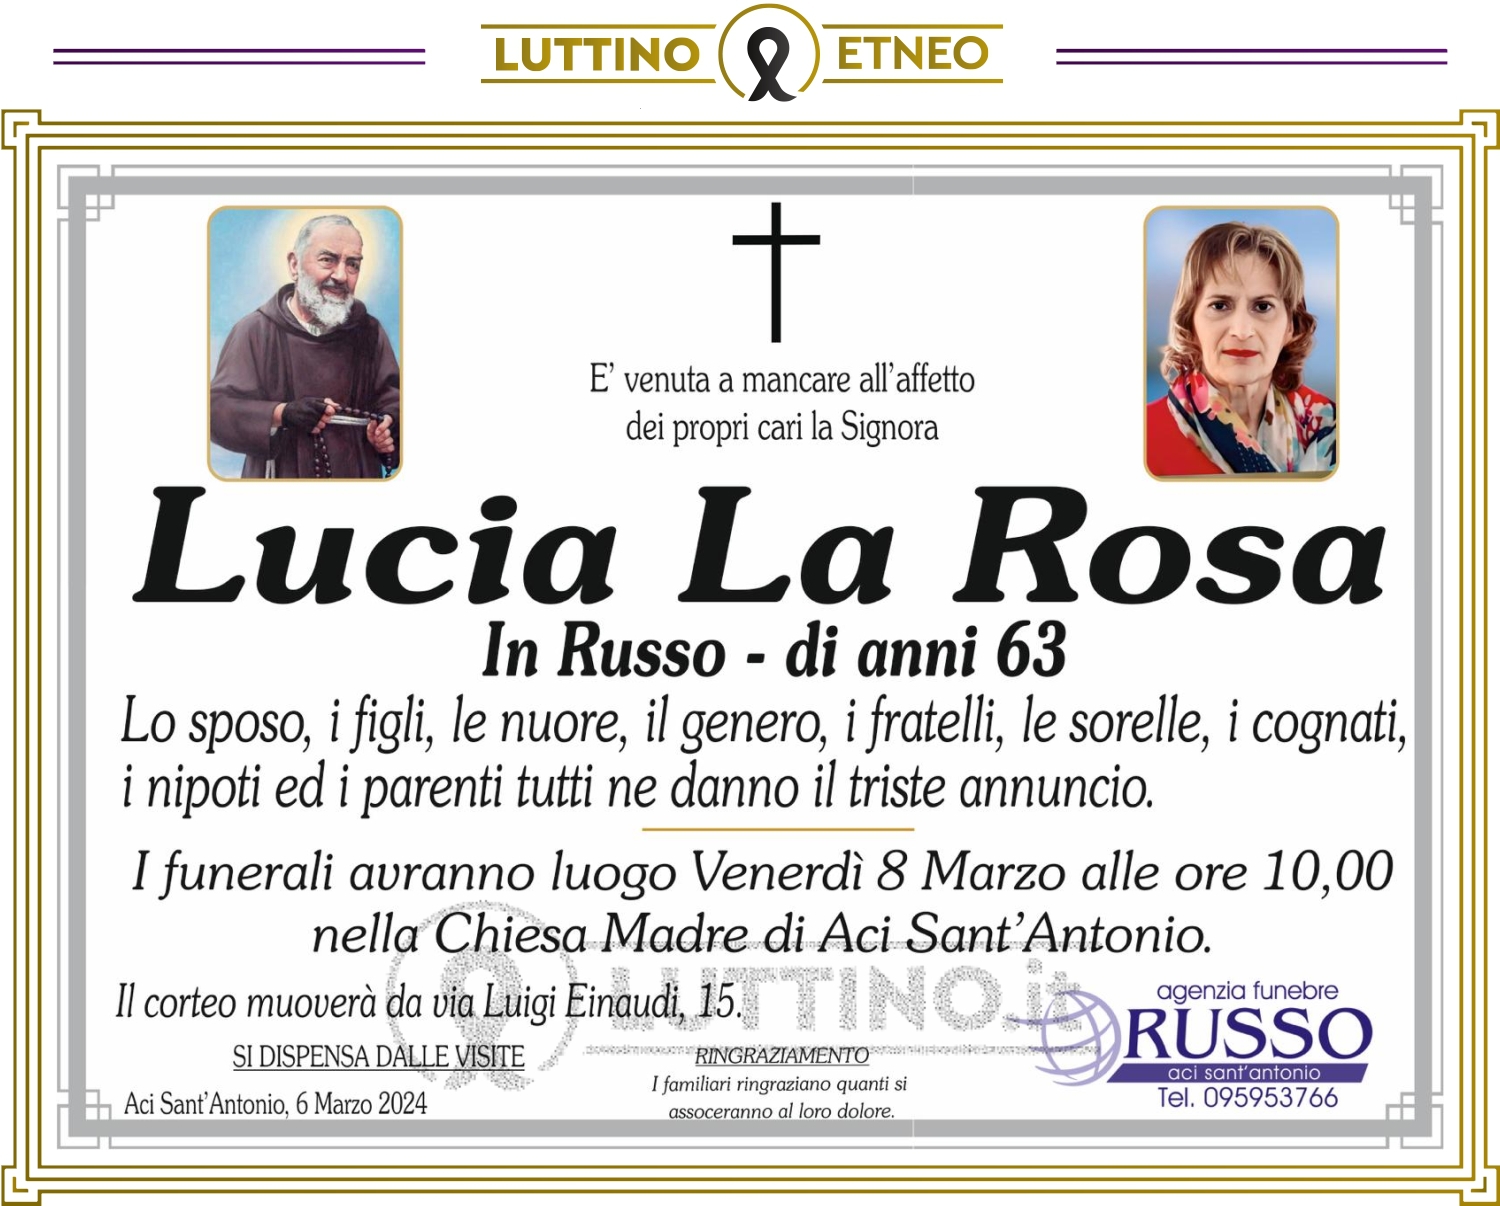 Lucia La Rosa